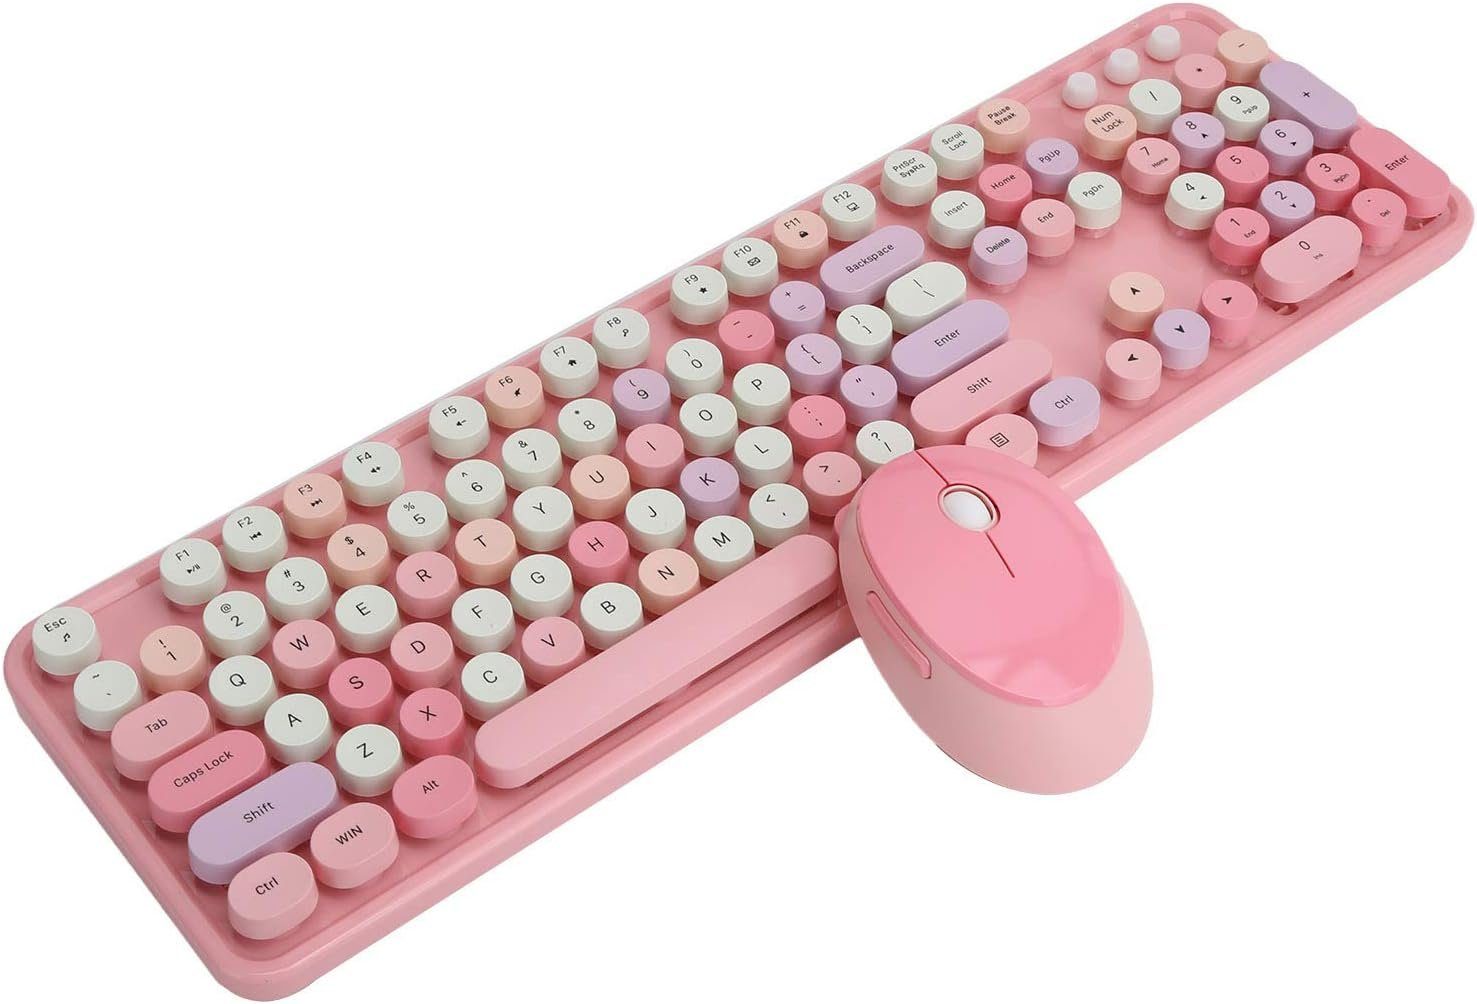 Goshyda Handgelenkauflage Tastatur- und Maus-Set, Effizientes Arbeiten,104 Tasten und Retro-Design,Multimedia-Kontrolle